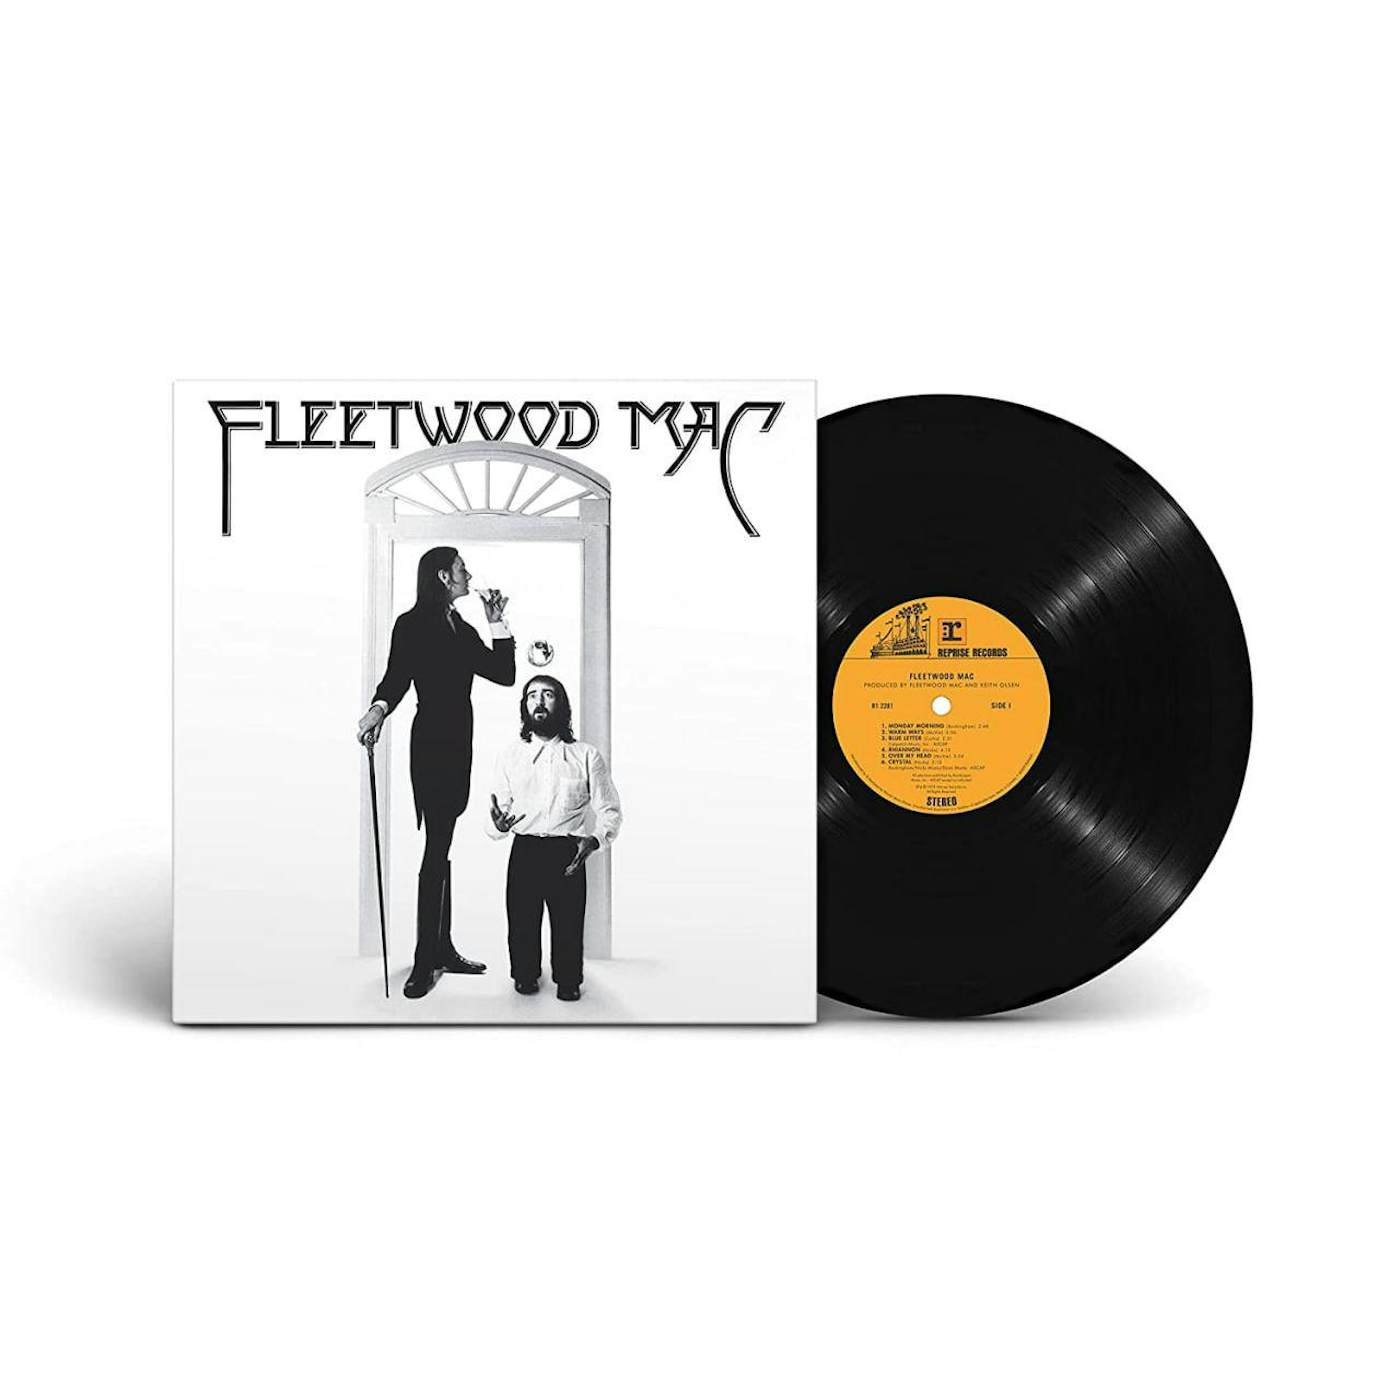 Fleetwood Mac Vinyl Record